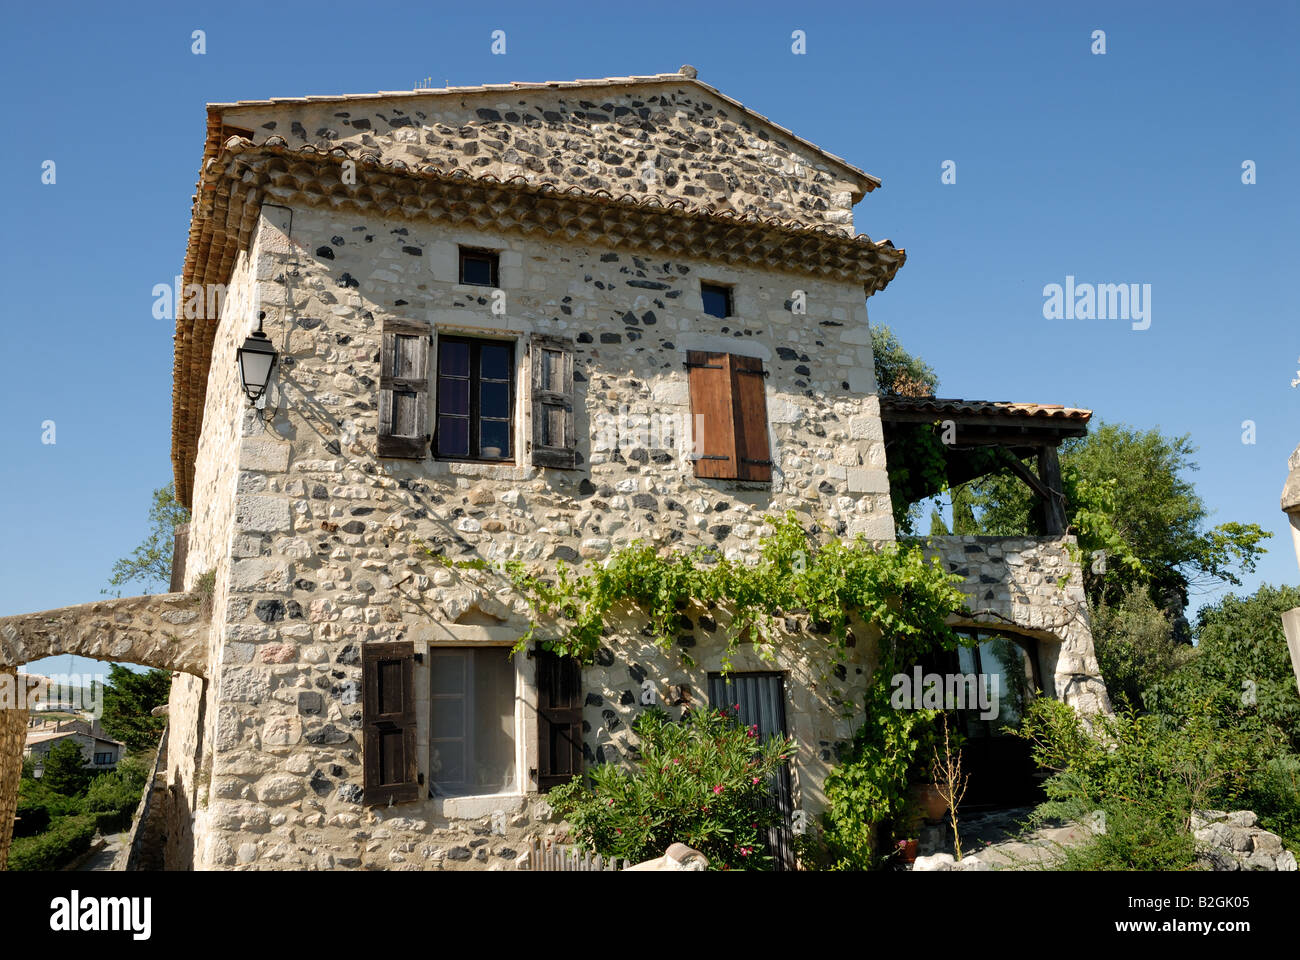 Maison ancienne dans un village dans le sud de la France Banque D'Images